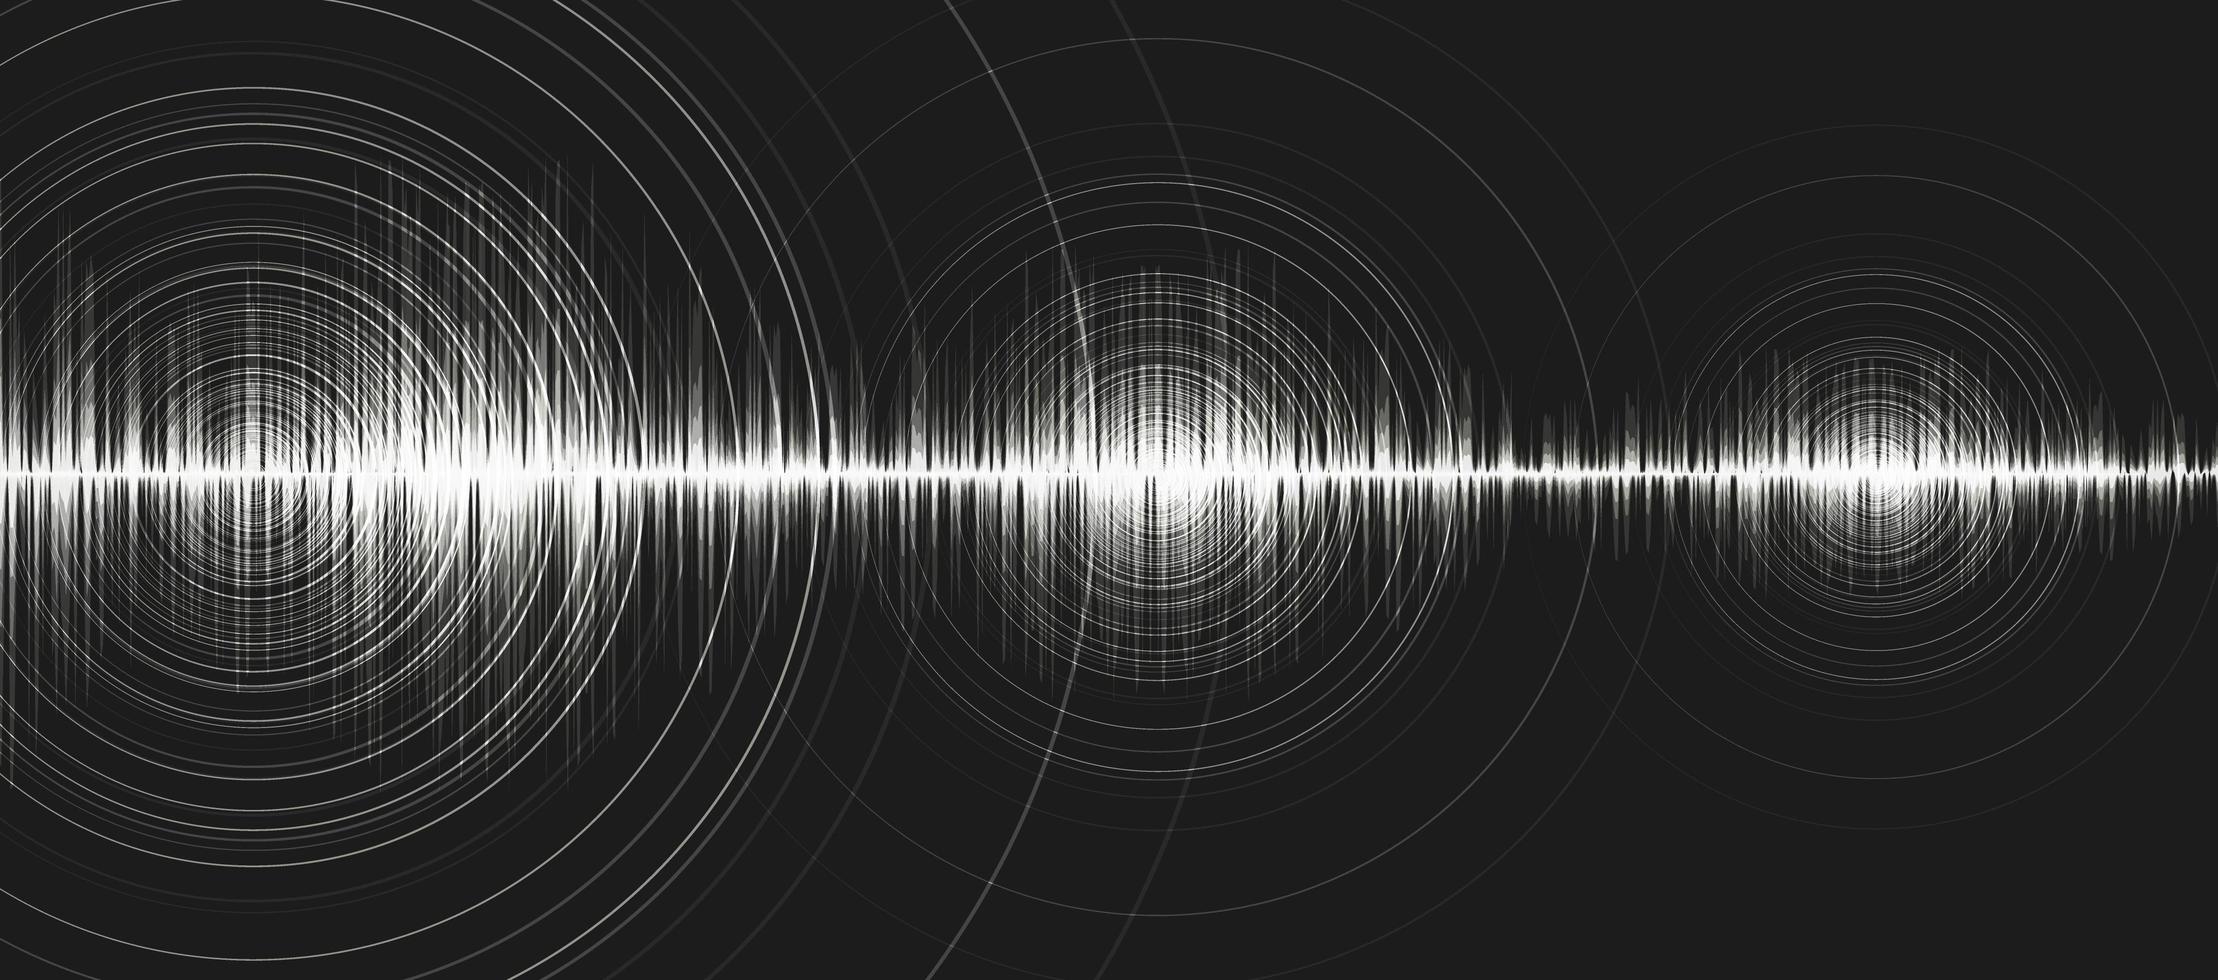 onda de som digital branca baixa e escala de richter de alto nível com vibração de círculo em fundo preto, tecnologia e conceito de diagrama de onda de terremoto, design para estúdio de música e ciência, ilustração vetorial. vetor